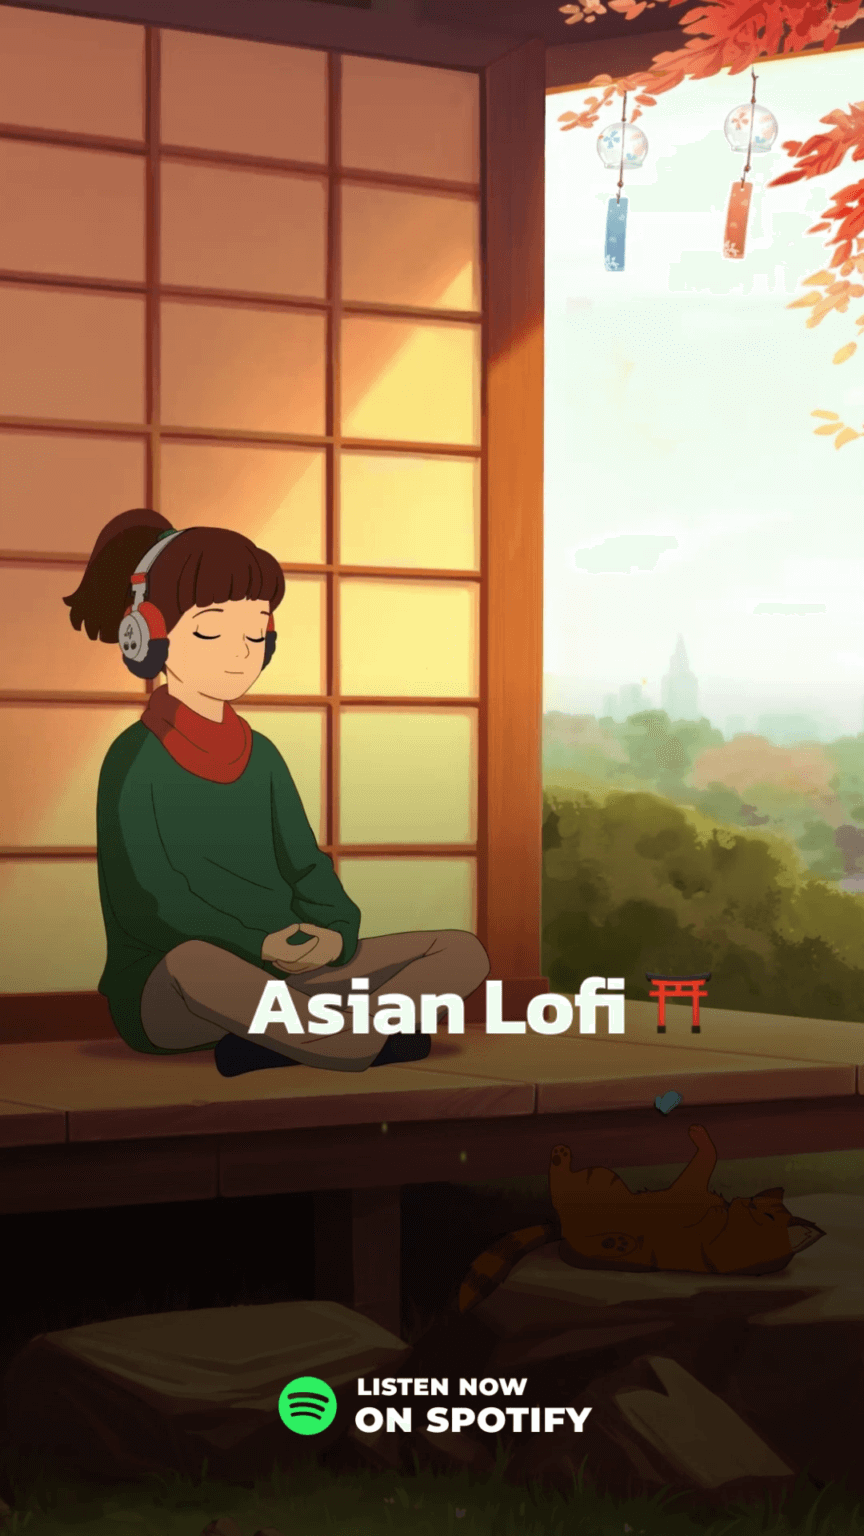 Asian Lofi Preview Spotify